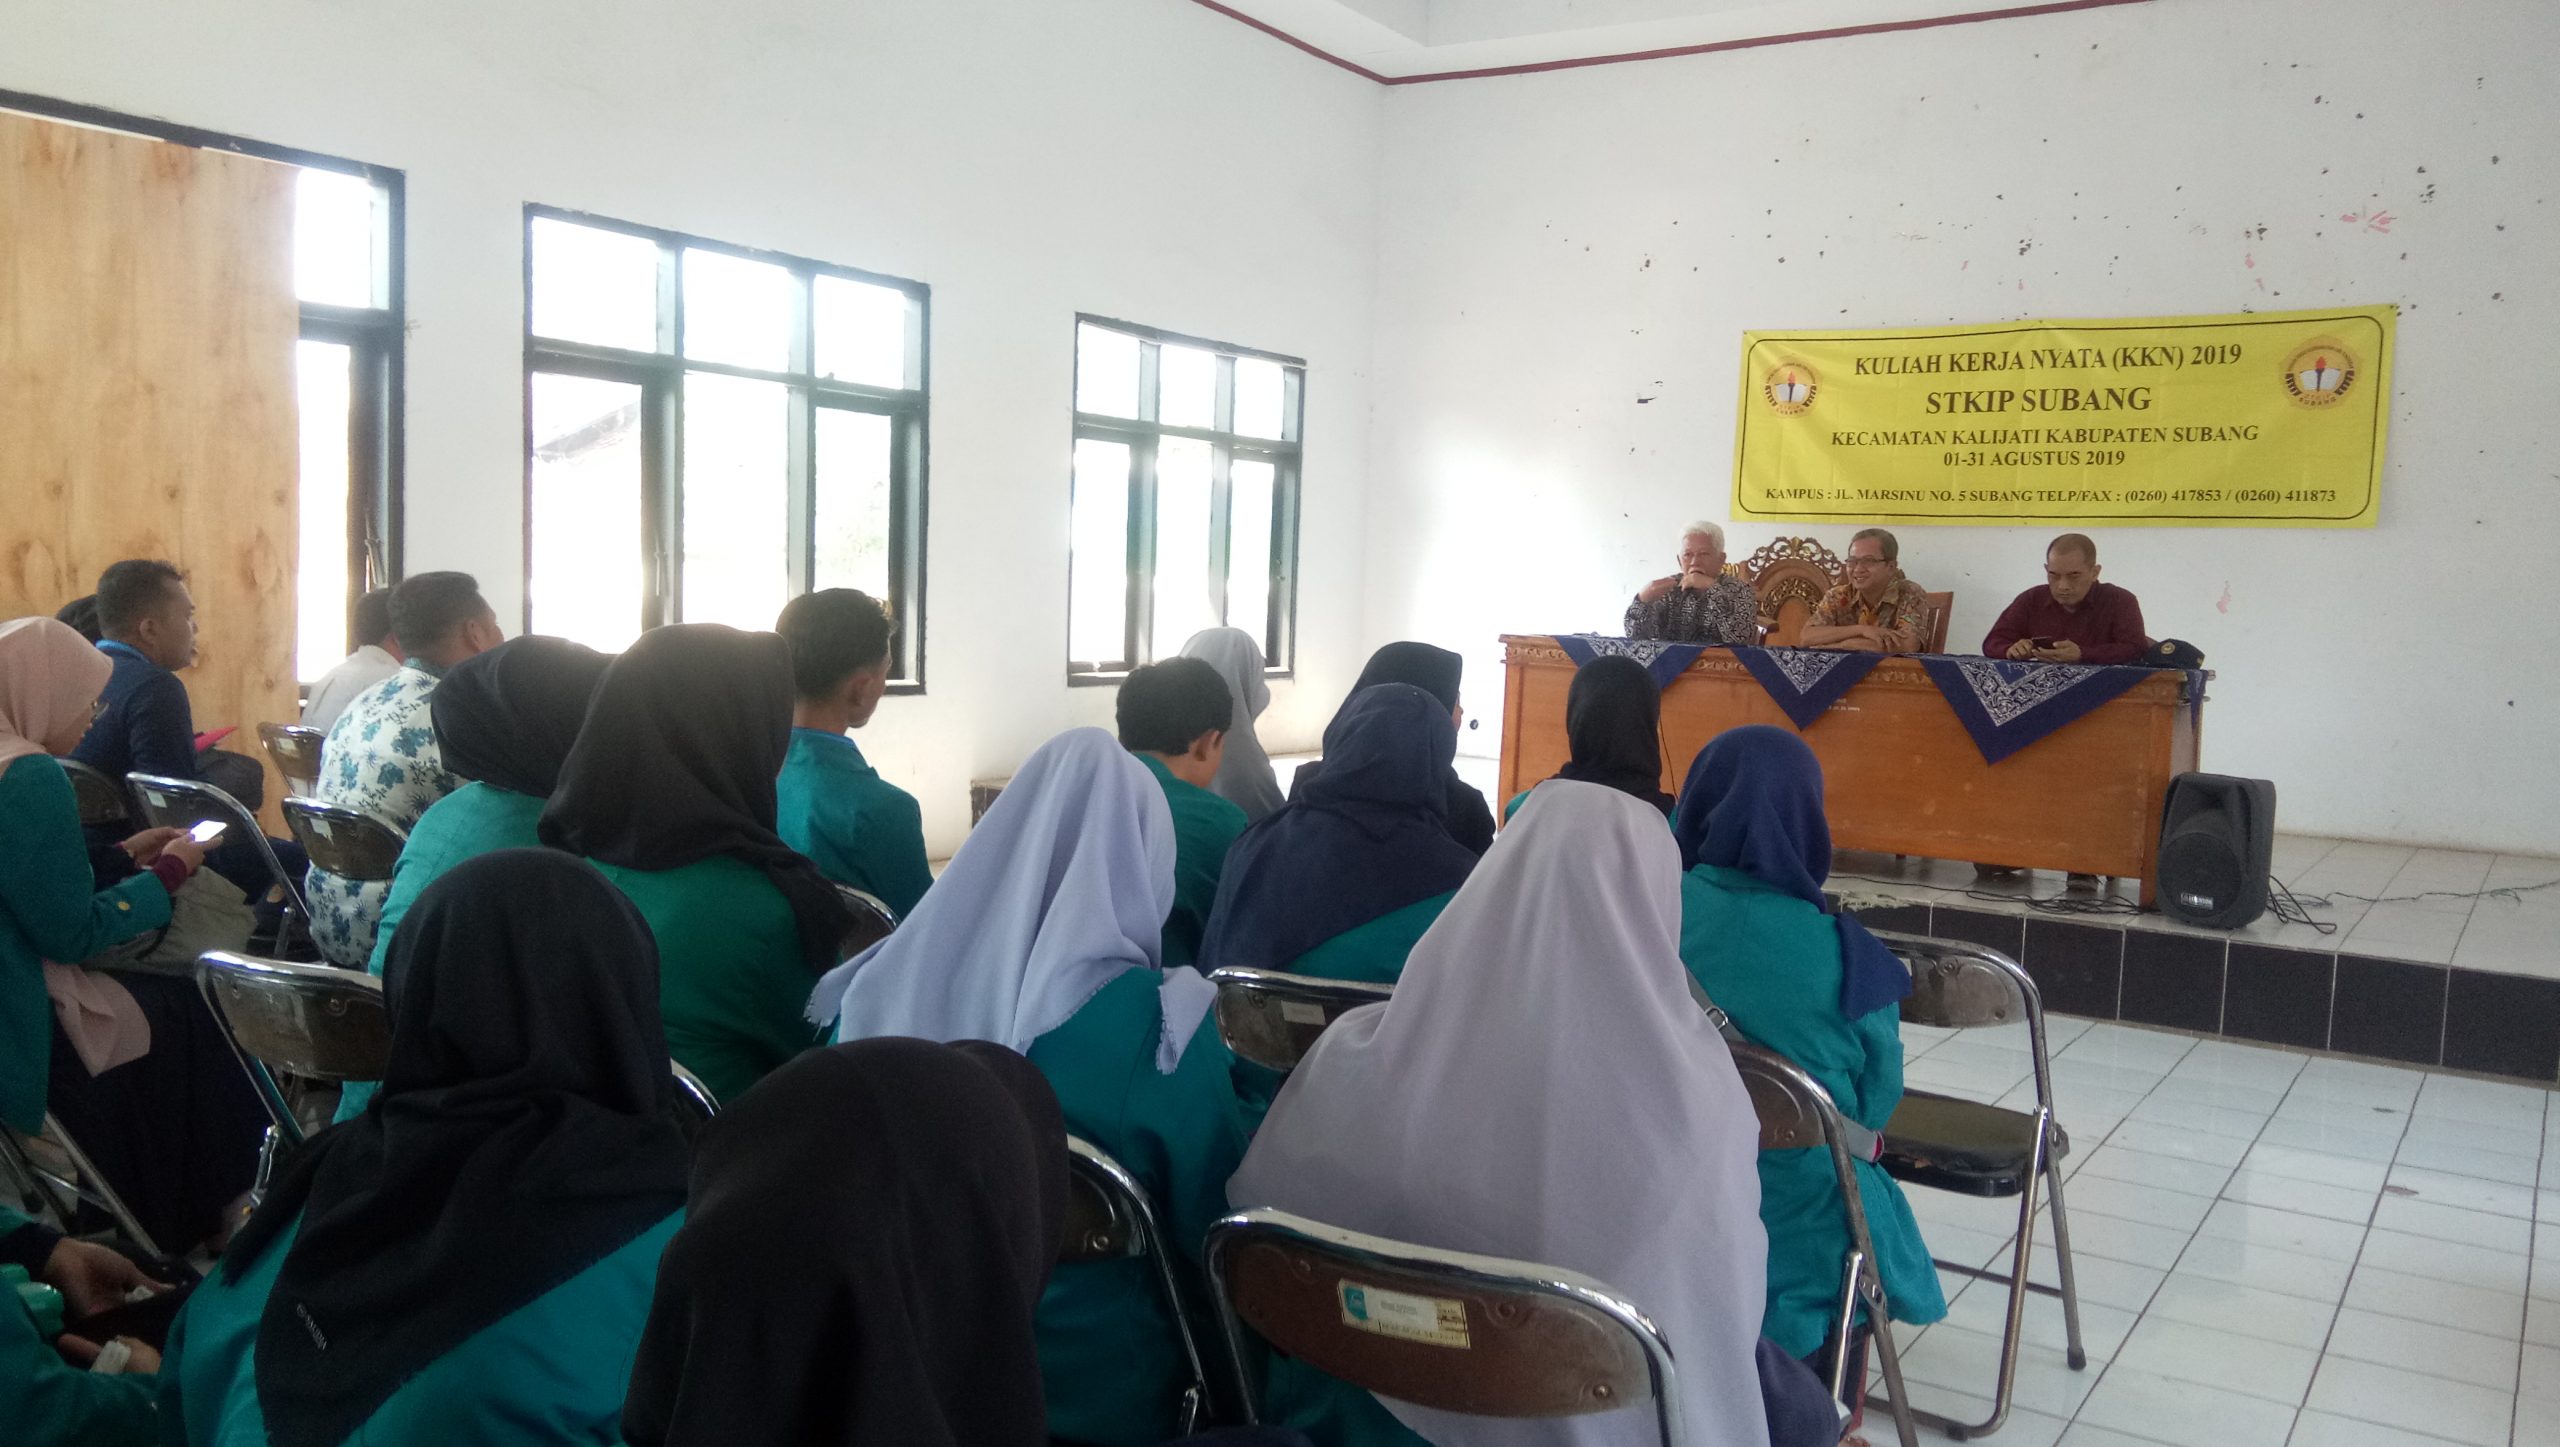 200 Mahasiswa STKIP KKN di Kalijati, Implementasikan Ilmu di Perkuliahan